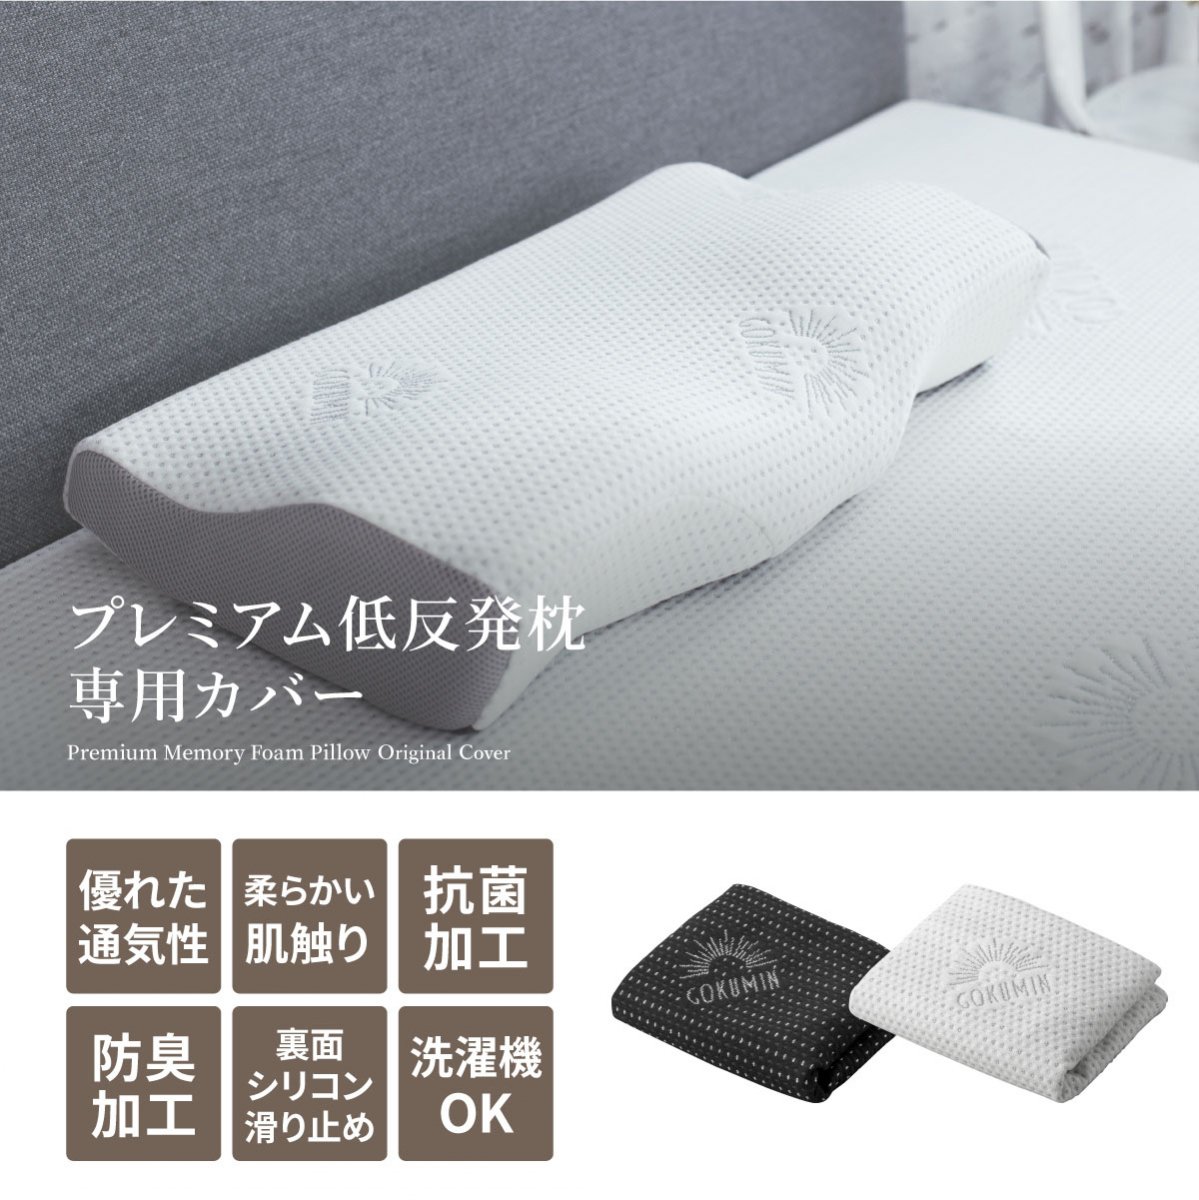 プレミアム低反発枕専用カバー | カバーであなたの悩みを解決 - GOKUMIN(極眠)